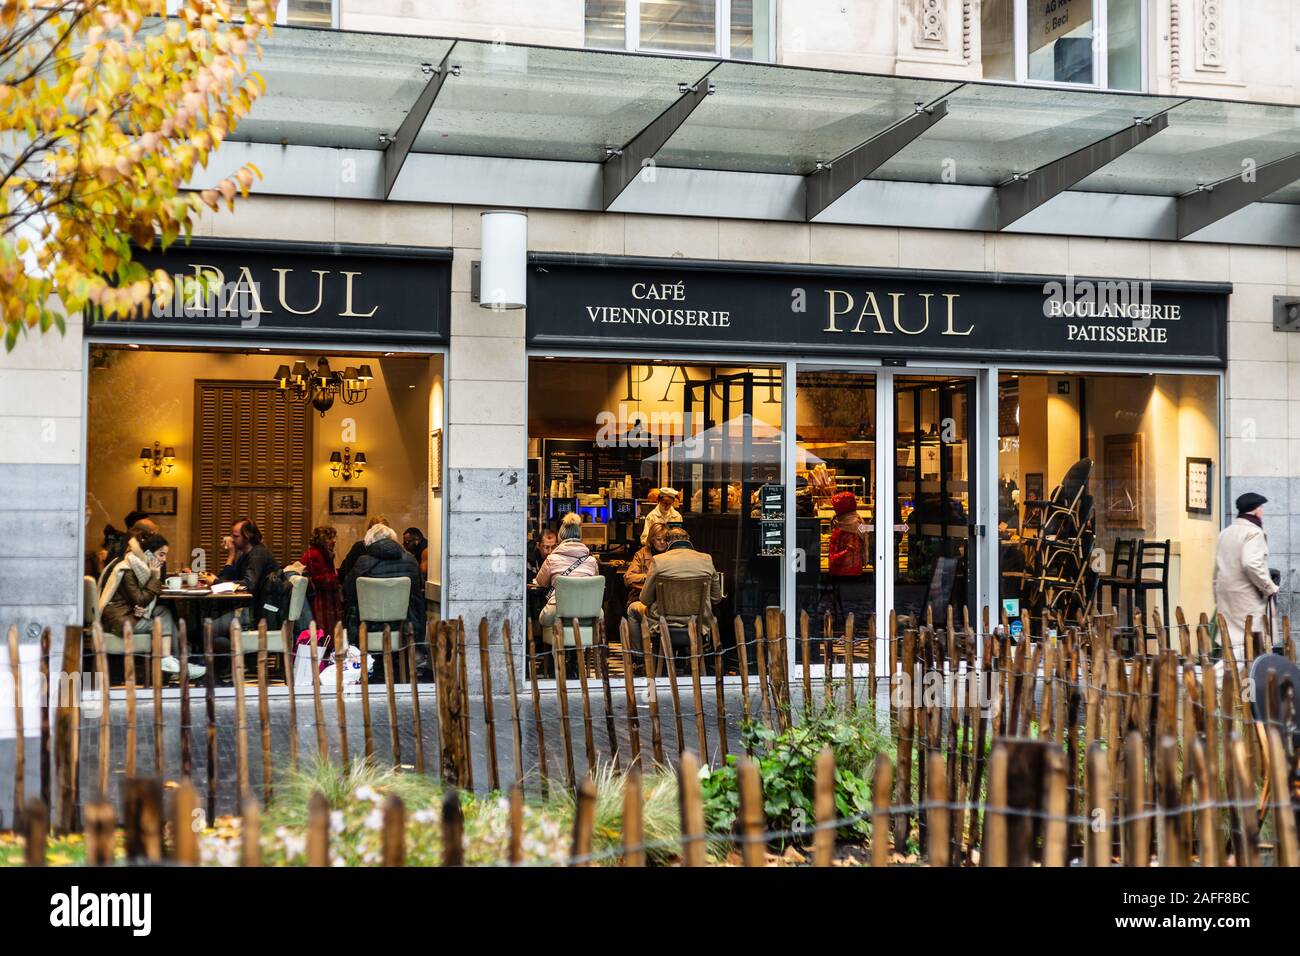 Paul boulangerie, Bruxelles, Belgium Stock Photo